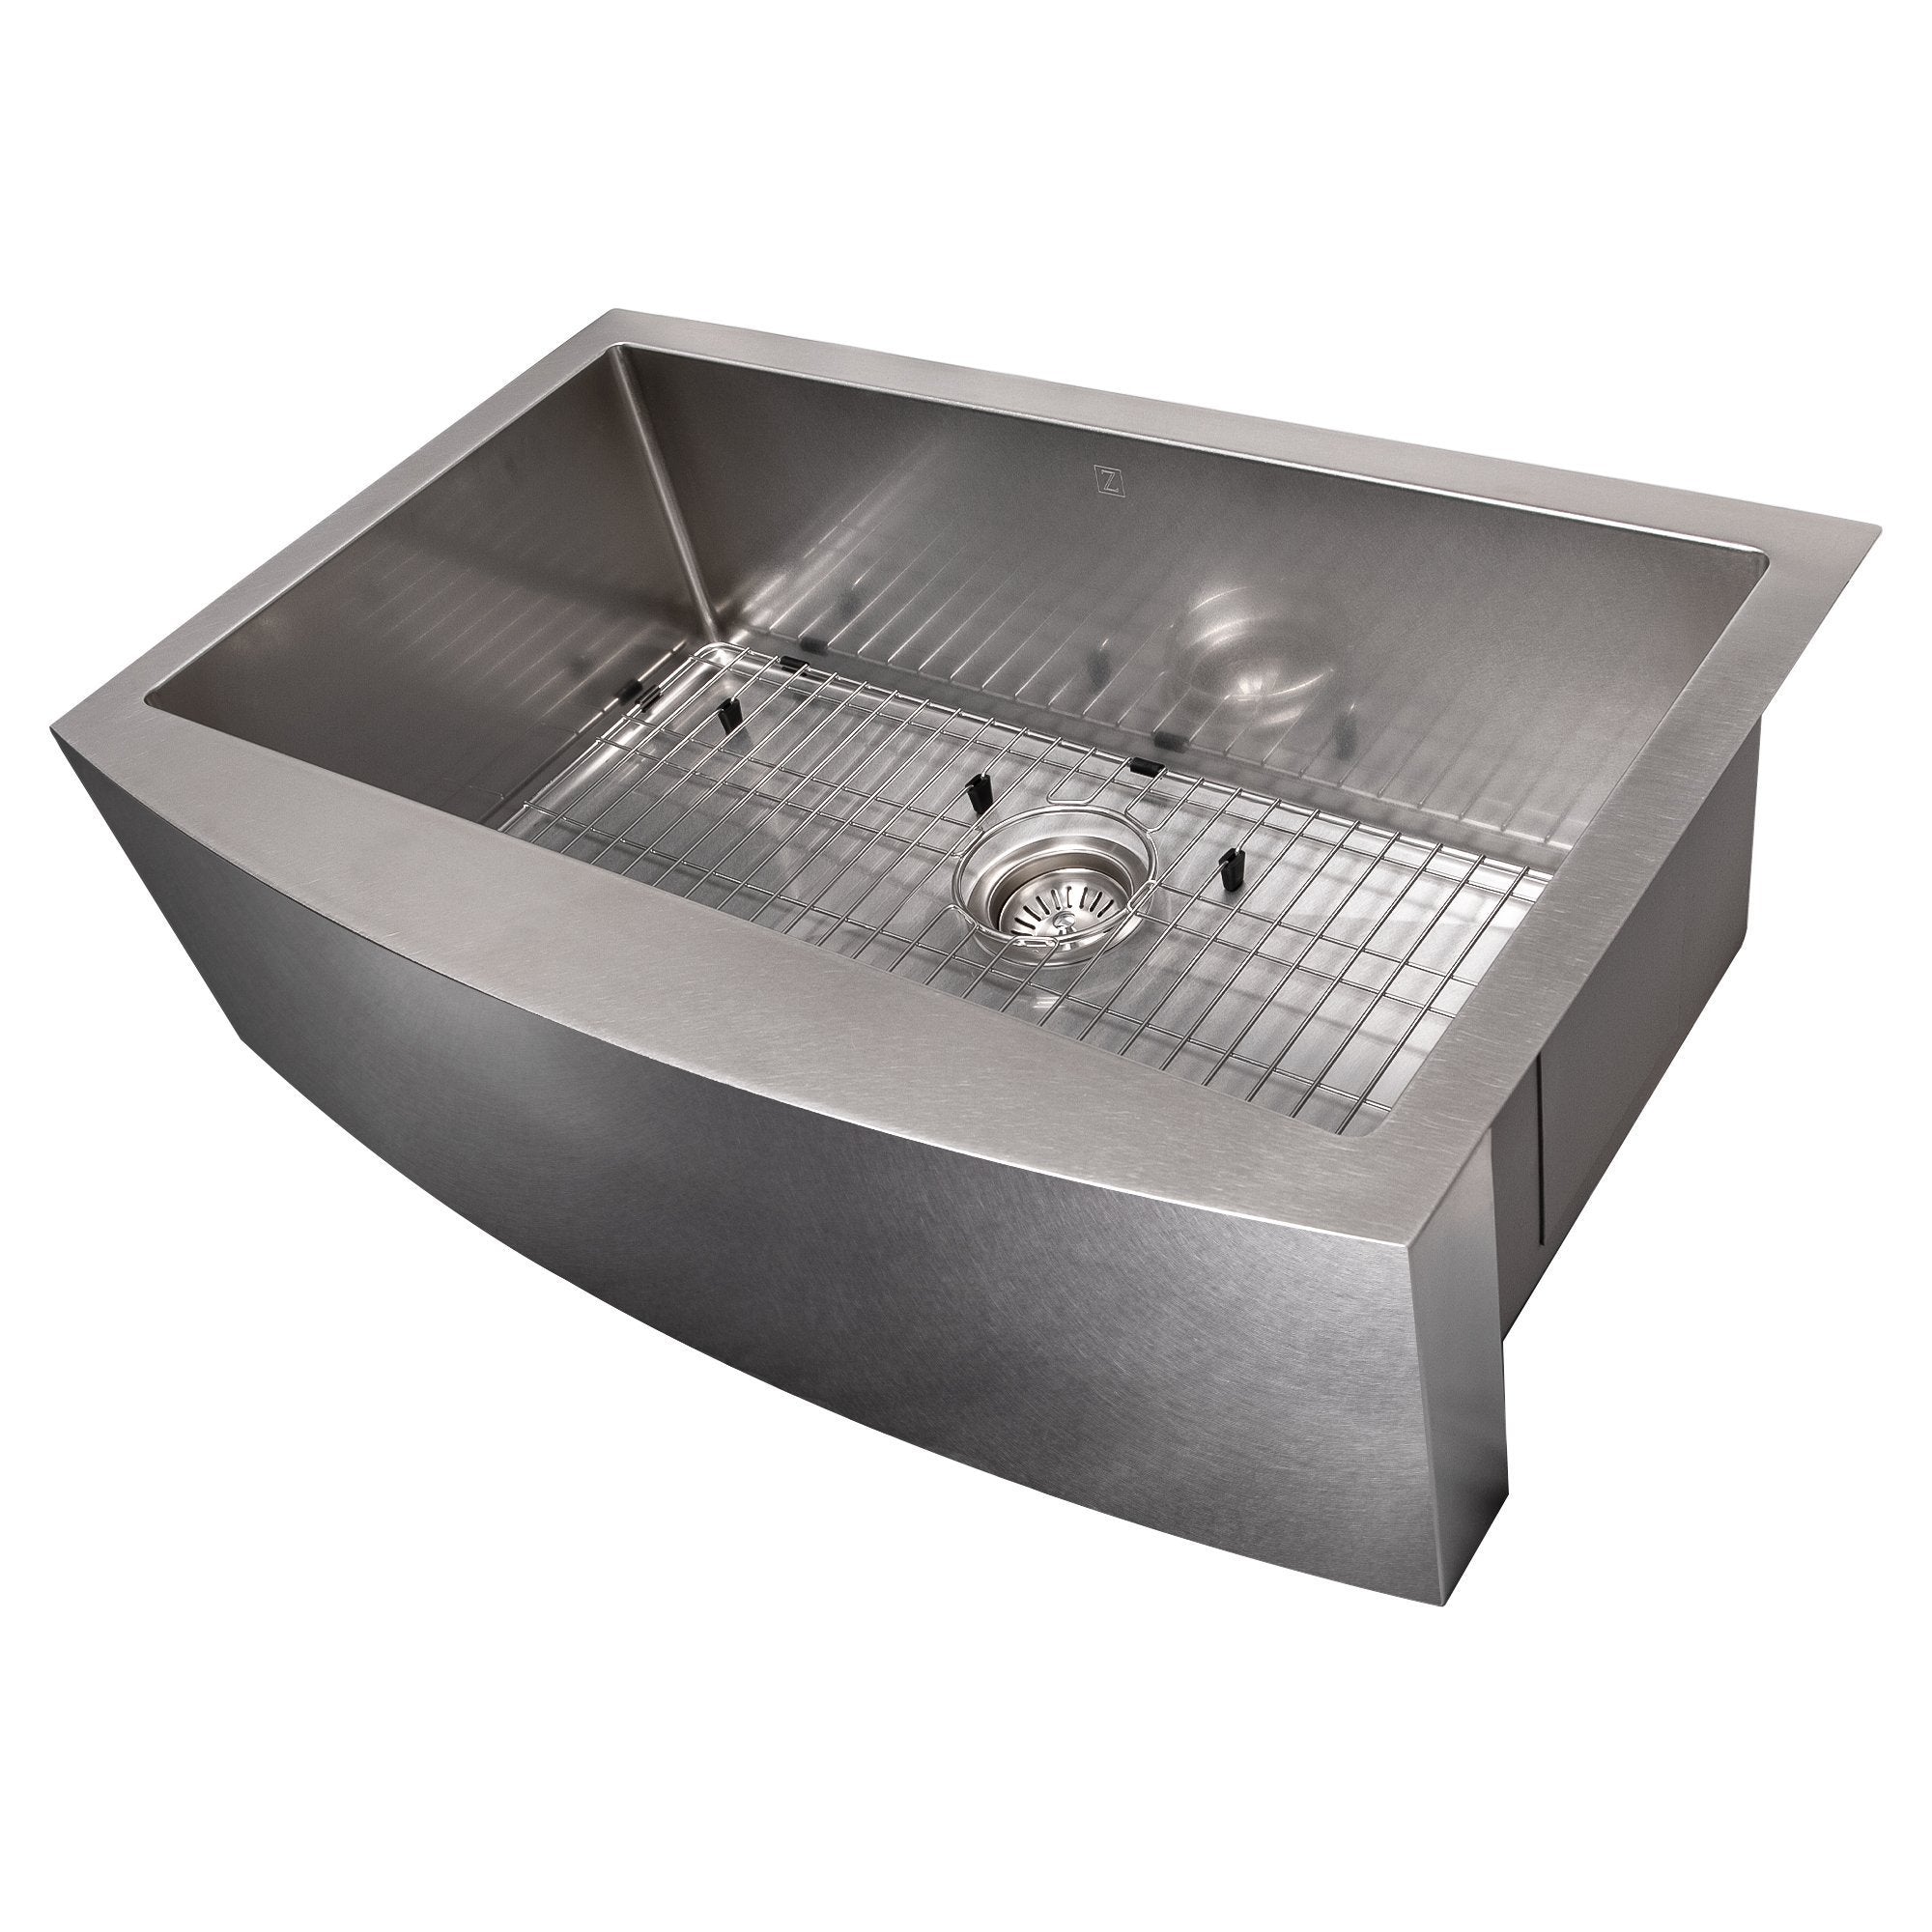 ZLINE 33 in. Vail Farmhouse Apron Mount Single Bowl Kitchen Sink with Bottom Grid (SAS-33) Stainless Steel